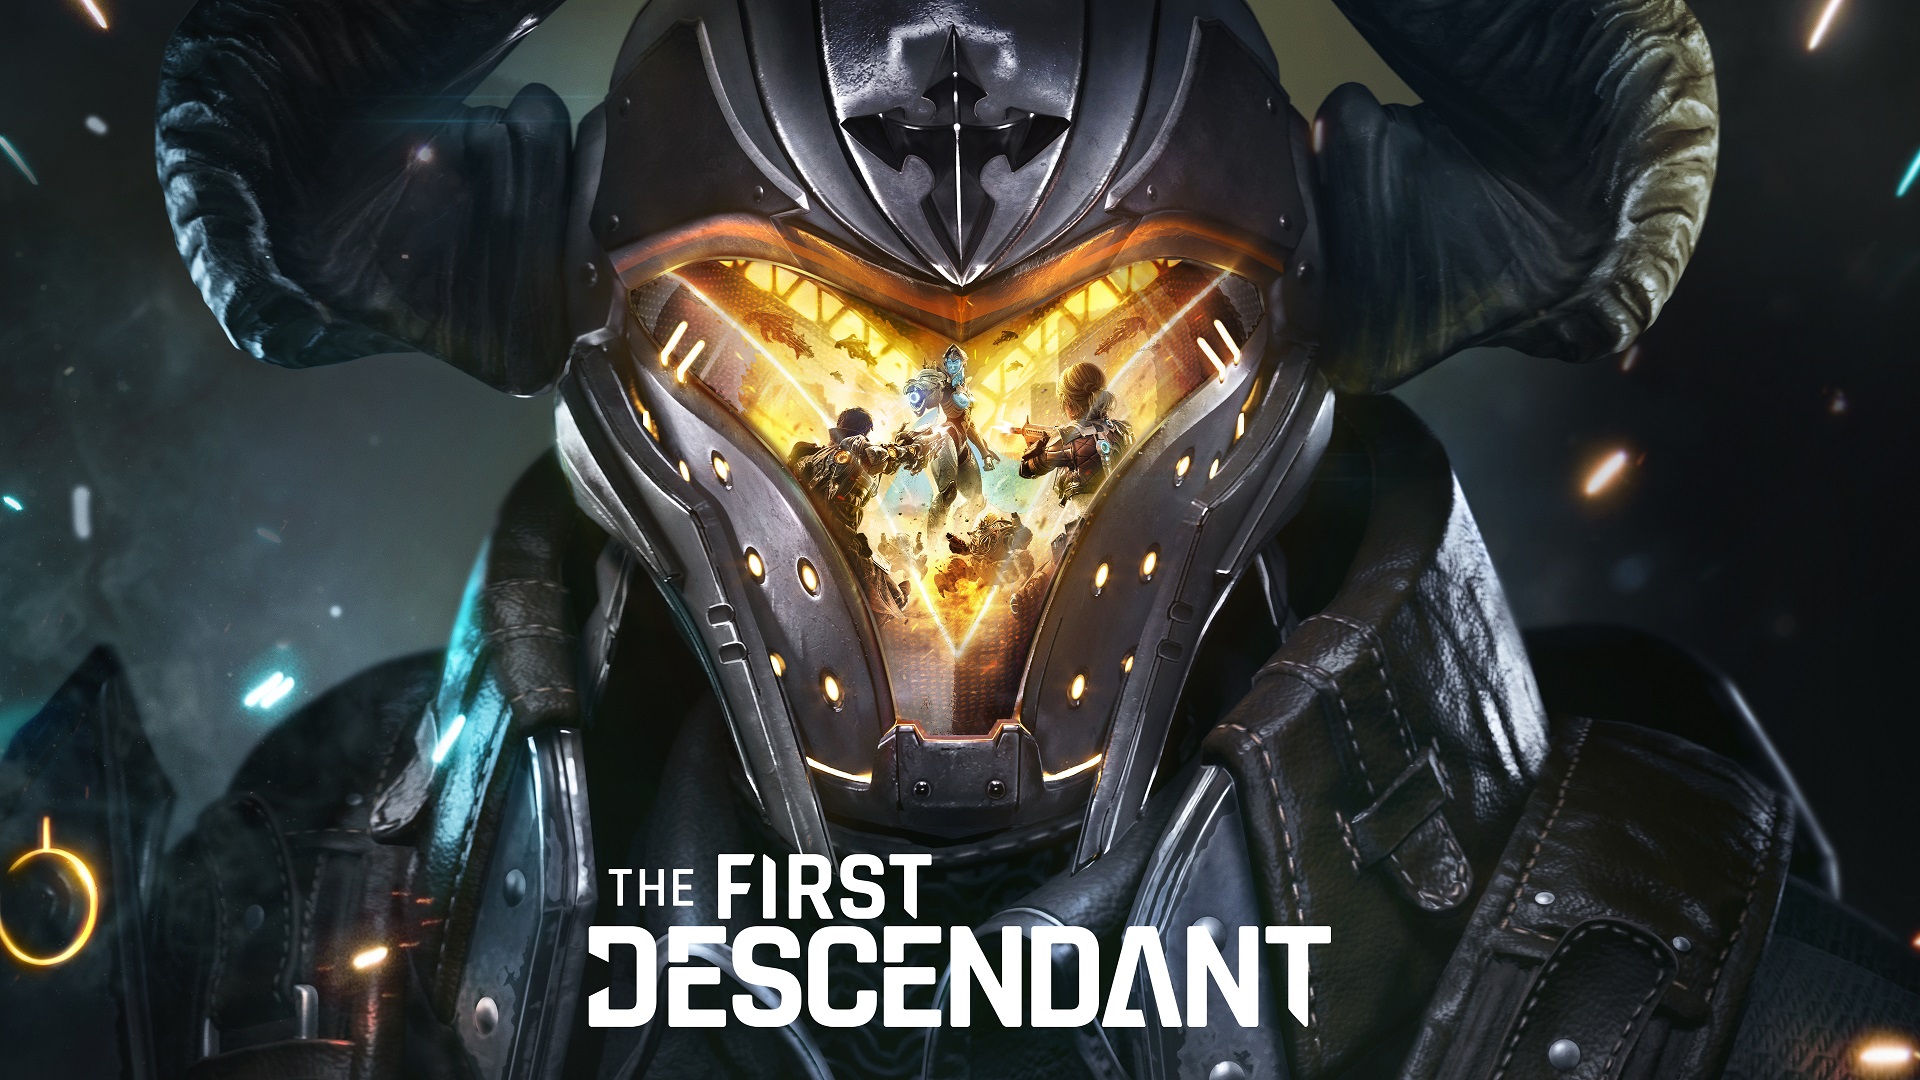 تریلری جدید از بازی The First Descendant منتشر شد